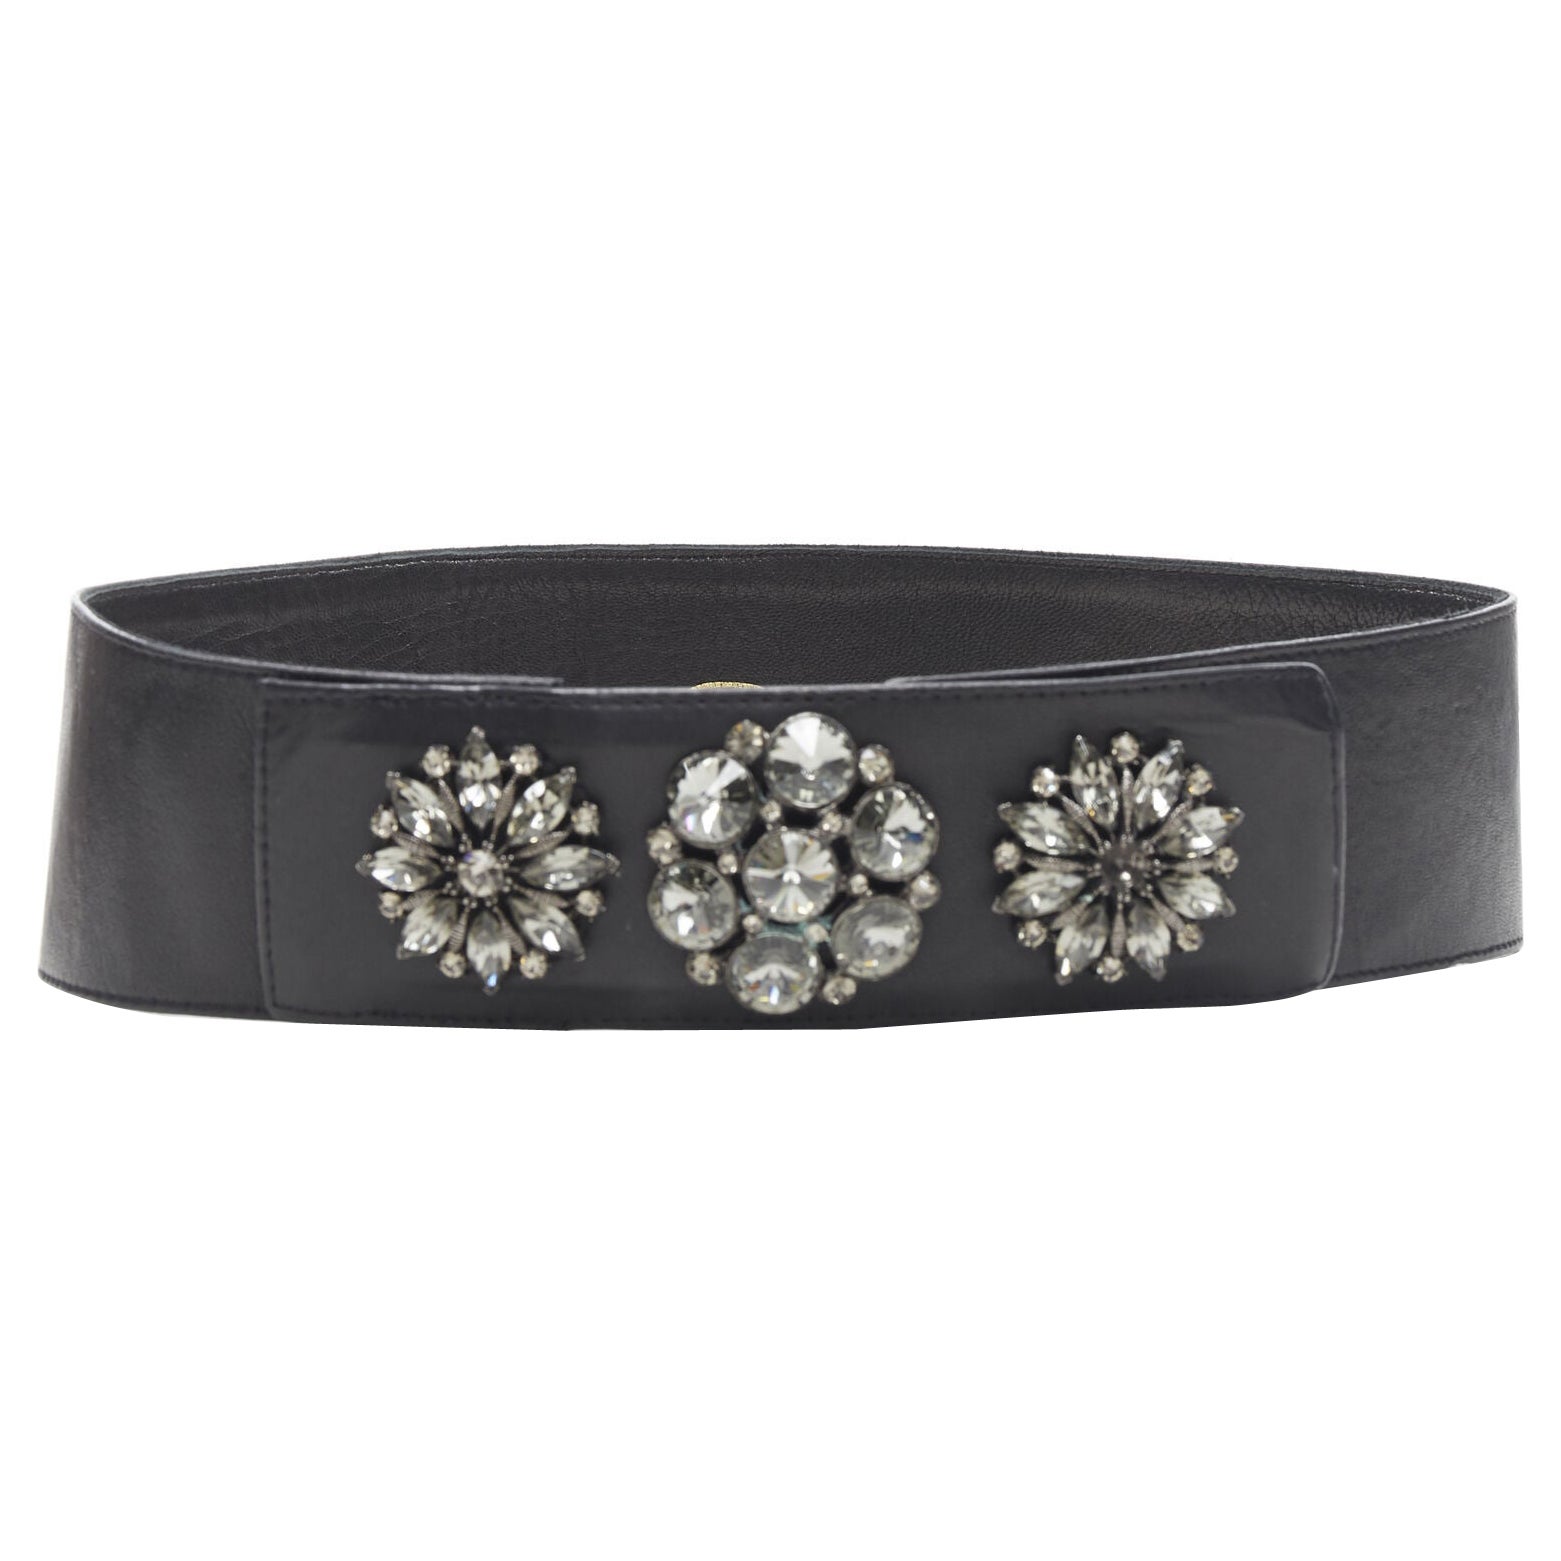 OSCAR DE LA RENTA black leather strass crystal jewel embellished belt S 27"